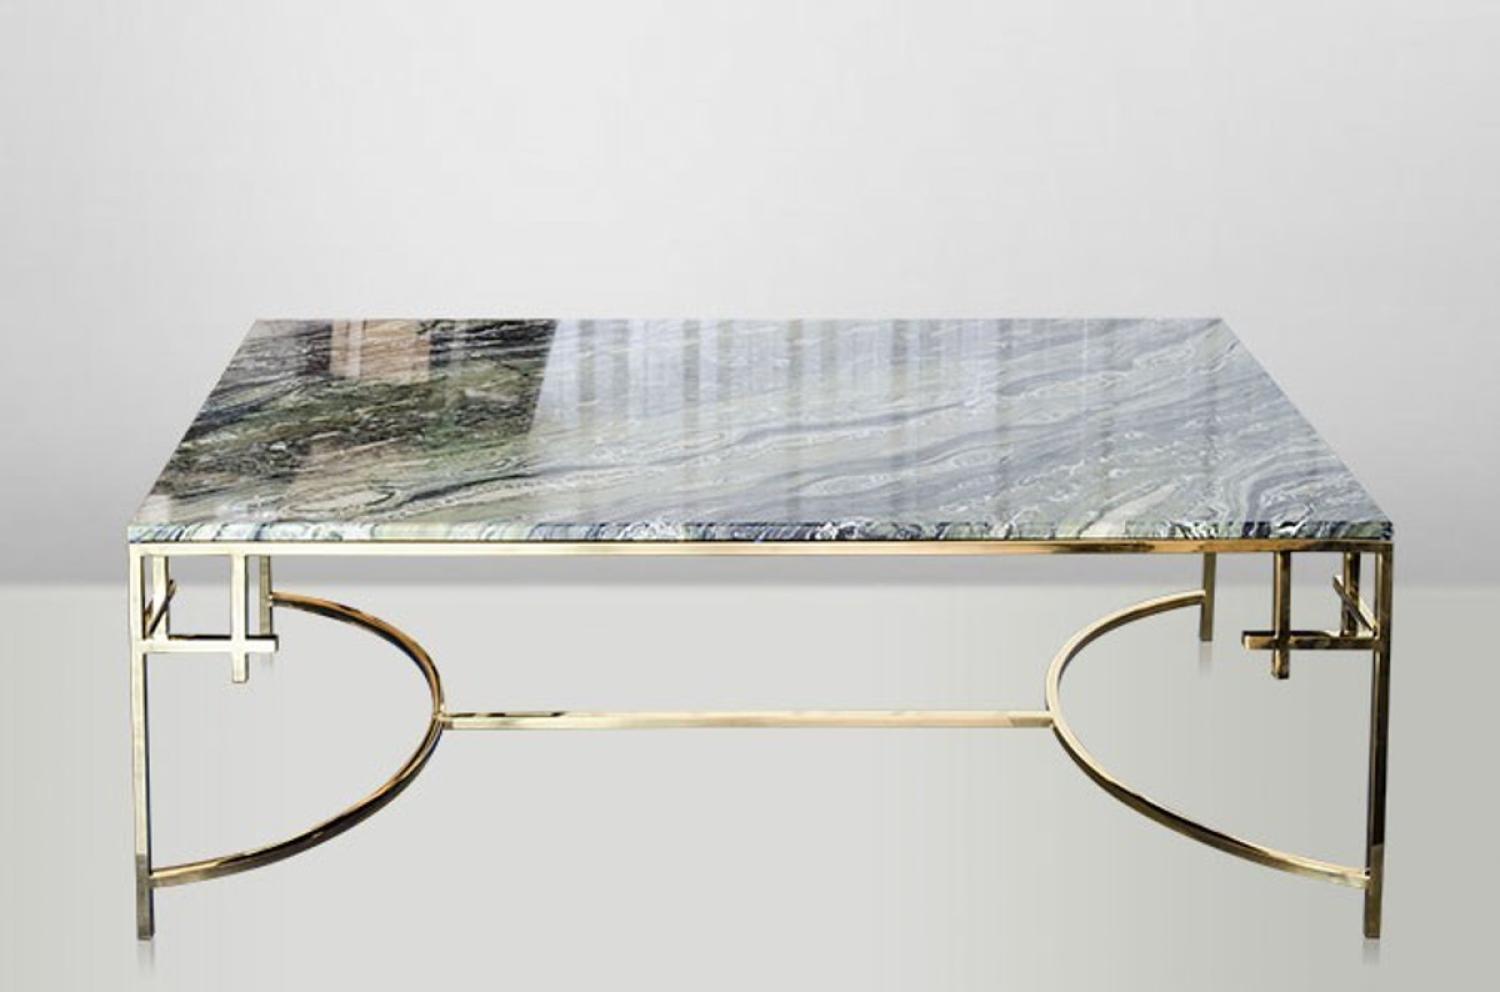 Casa Padrino Art Deco Couchtisch Gold Metall / Marmor 130 x 70 cm- Jugendstil Tisch - Möbel Wohnzimmer Bild 1